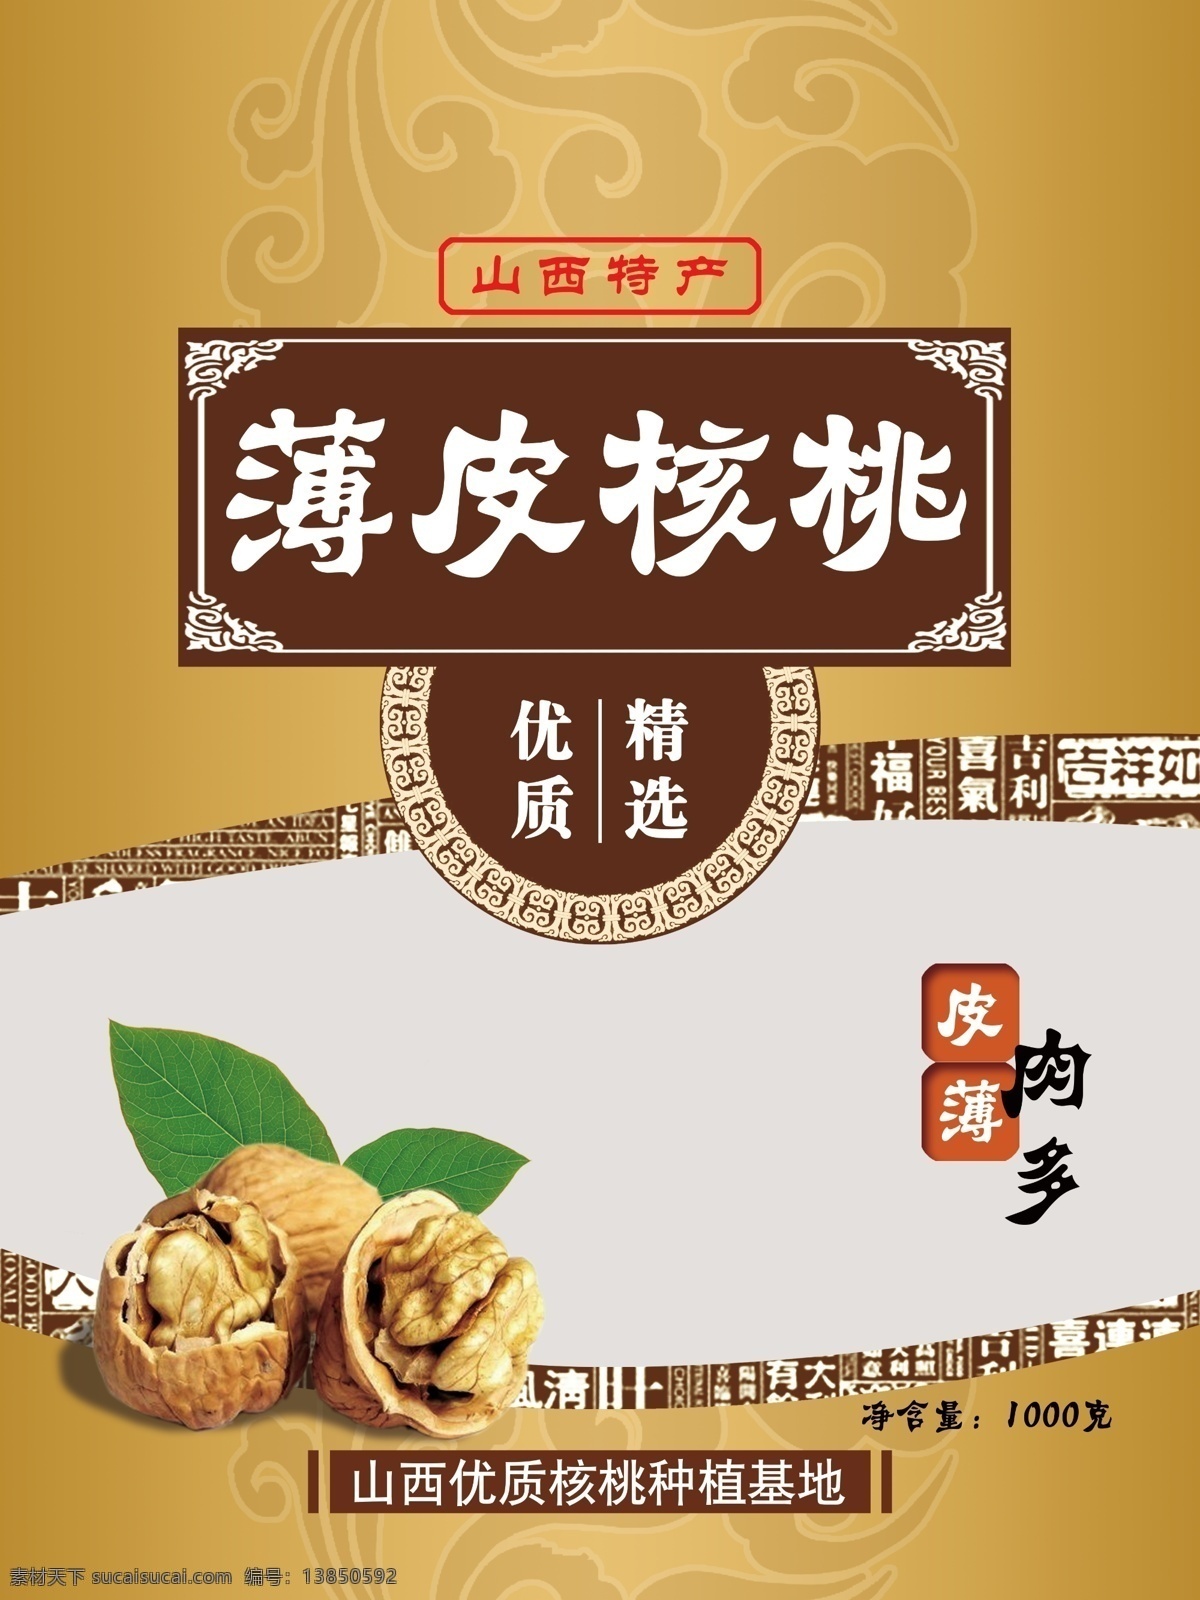 核桃包装 薄皮 核桃 山西特产 中国风 干果 食品包装 棕色